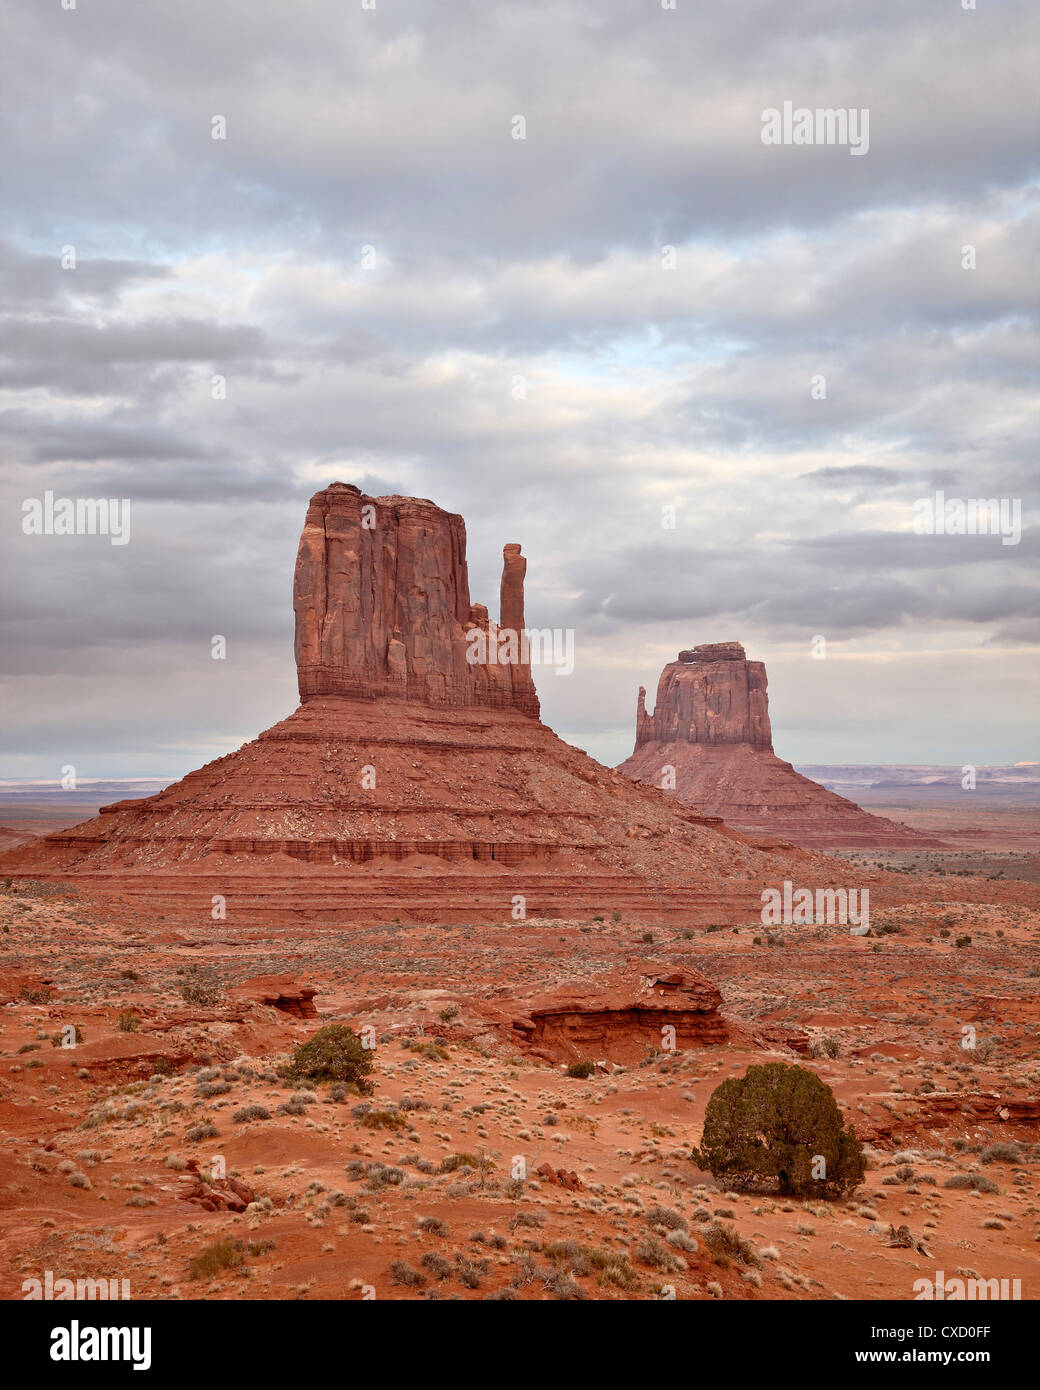 Les mitaines, Monument Valley Navajo Tribal Park, Arizona, États-Unis d'Amérique, Amérique du Nord Banque D'Images